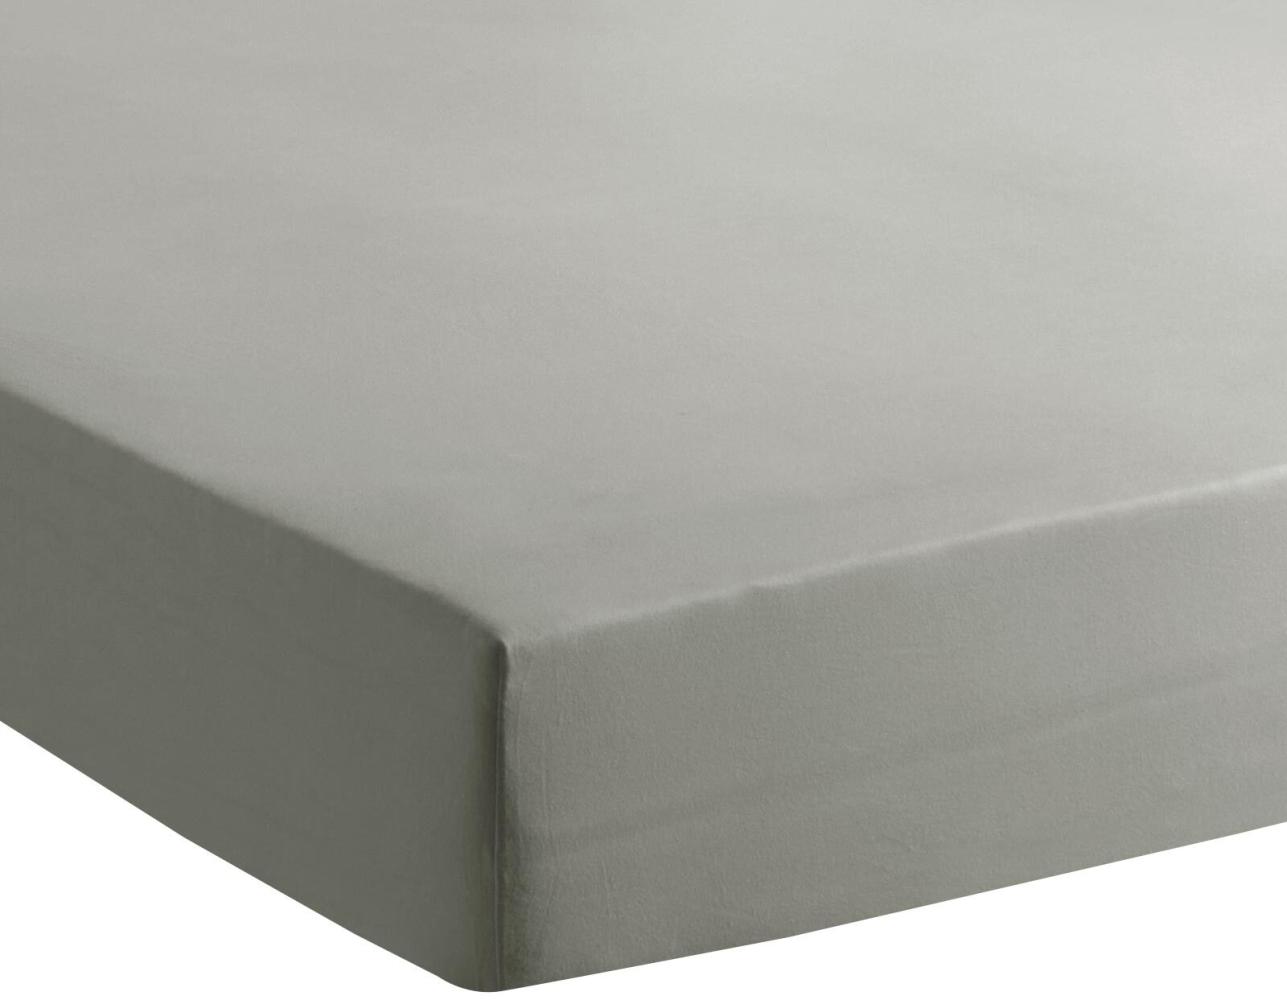 Traumschlaf 'Basic Single' Spannbettlaken, Jersey, grau, 90 x 200 - 100 x 200 cm Bild 1